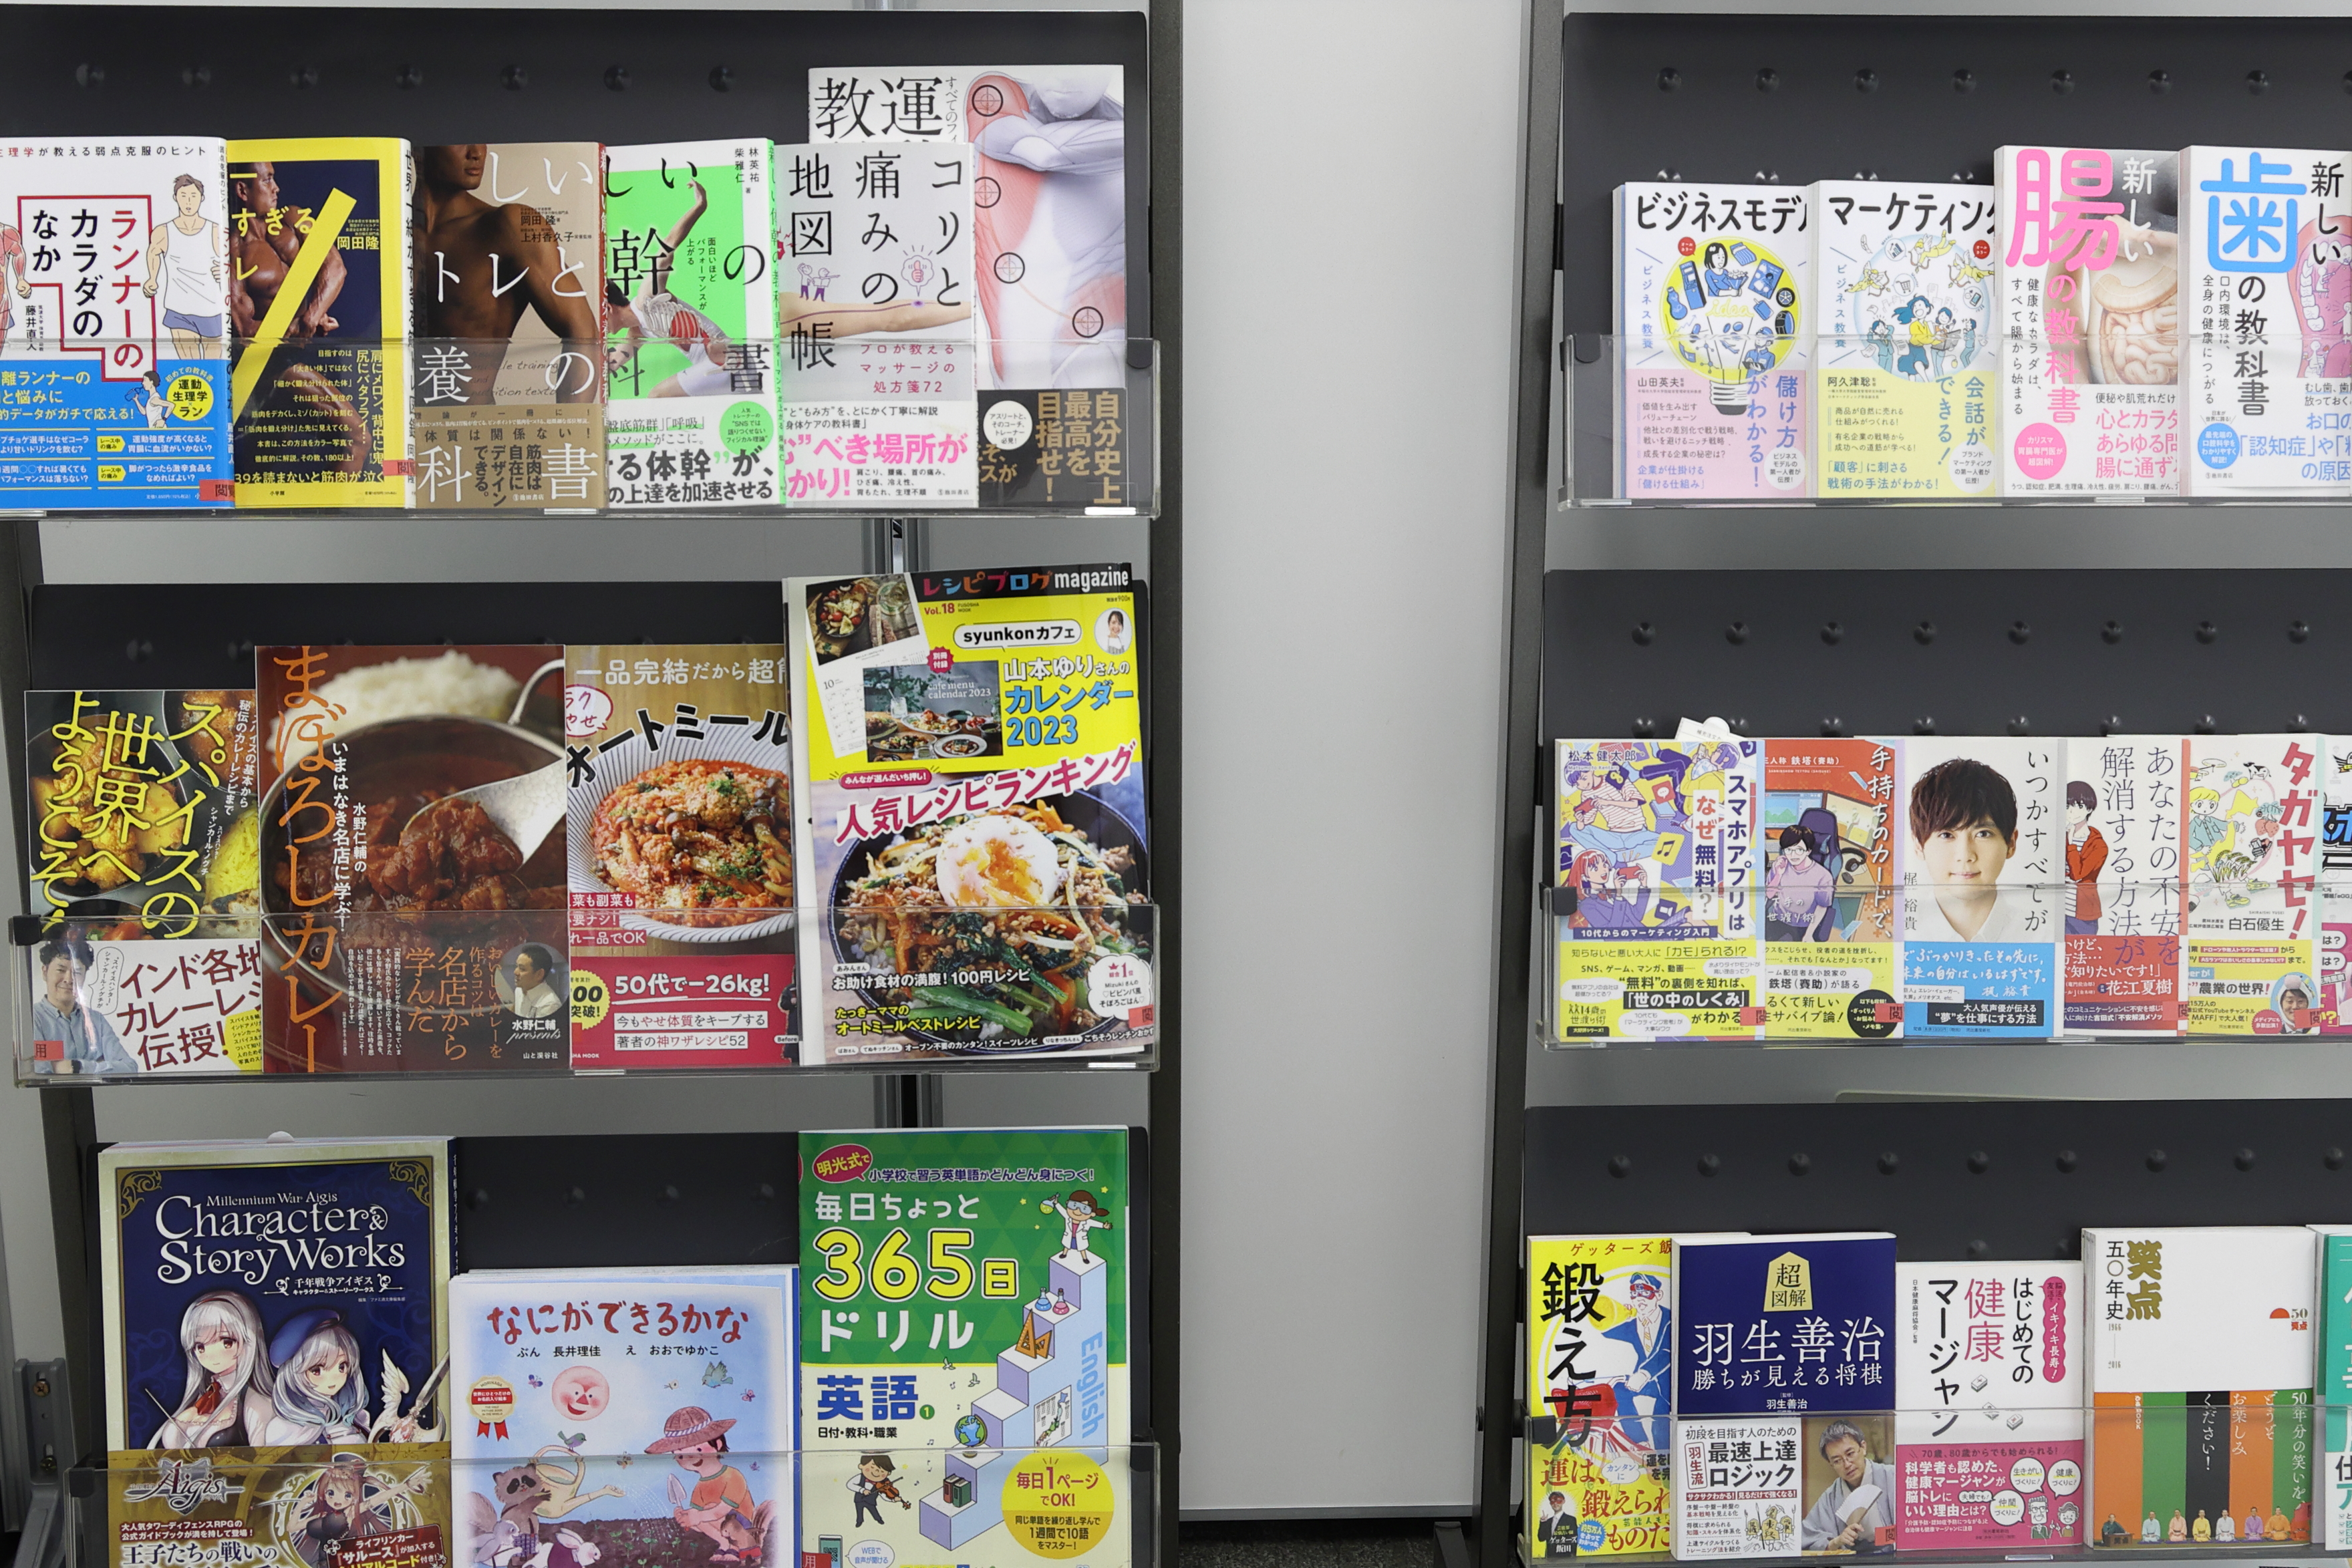 親会社のKWCは編集プロダクションとして35年以上、日本中で読まれている雑誌、書籍、ムックを制作してきた。ミリオンセラーを記憶した作品もある。